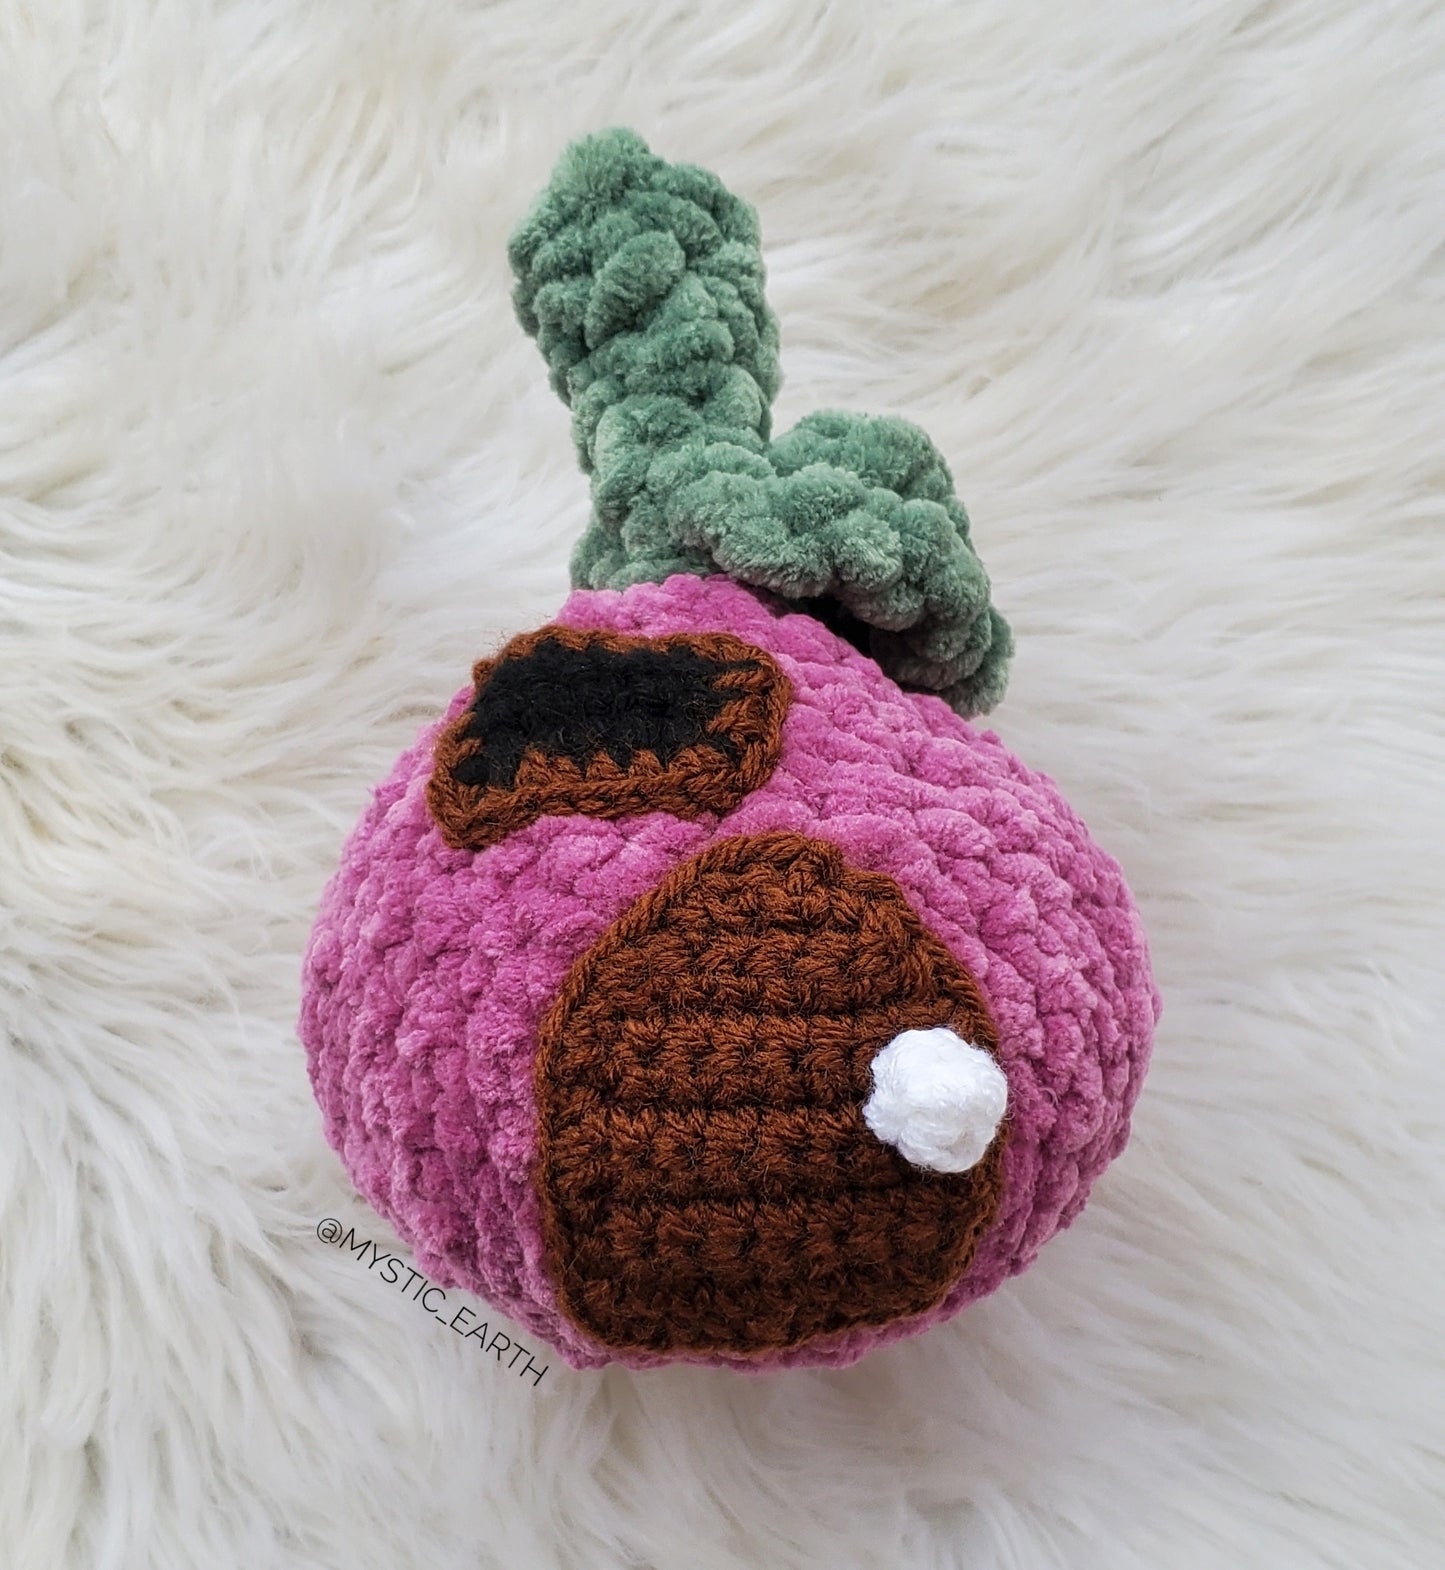 Fruit & Veggie Crochet House Plush (sold separately)